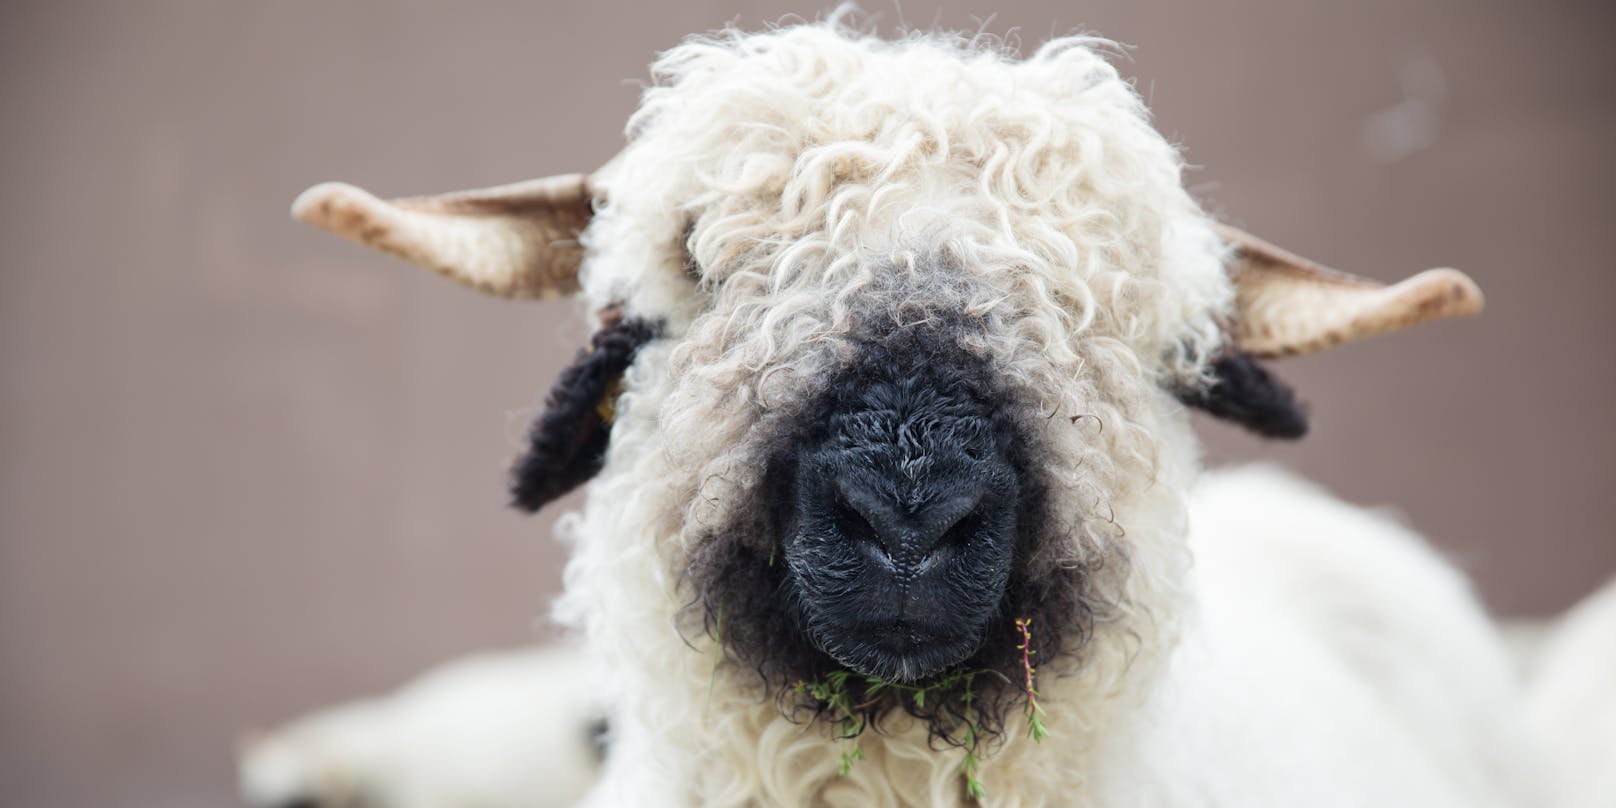 Unbekannte Täter haben in Scharnitz (Tirol) drei Schafe gestohlen.